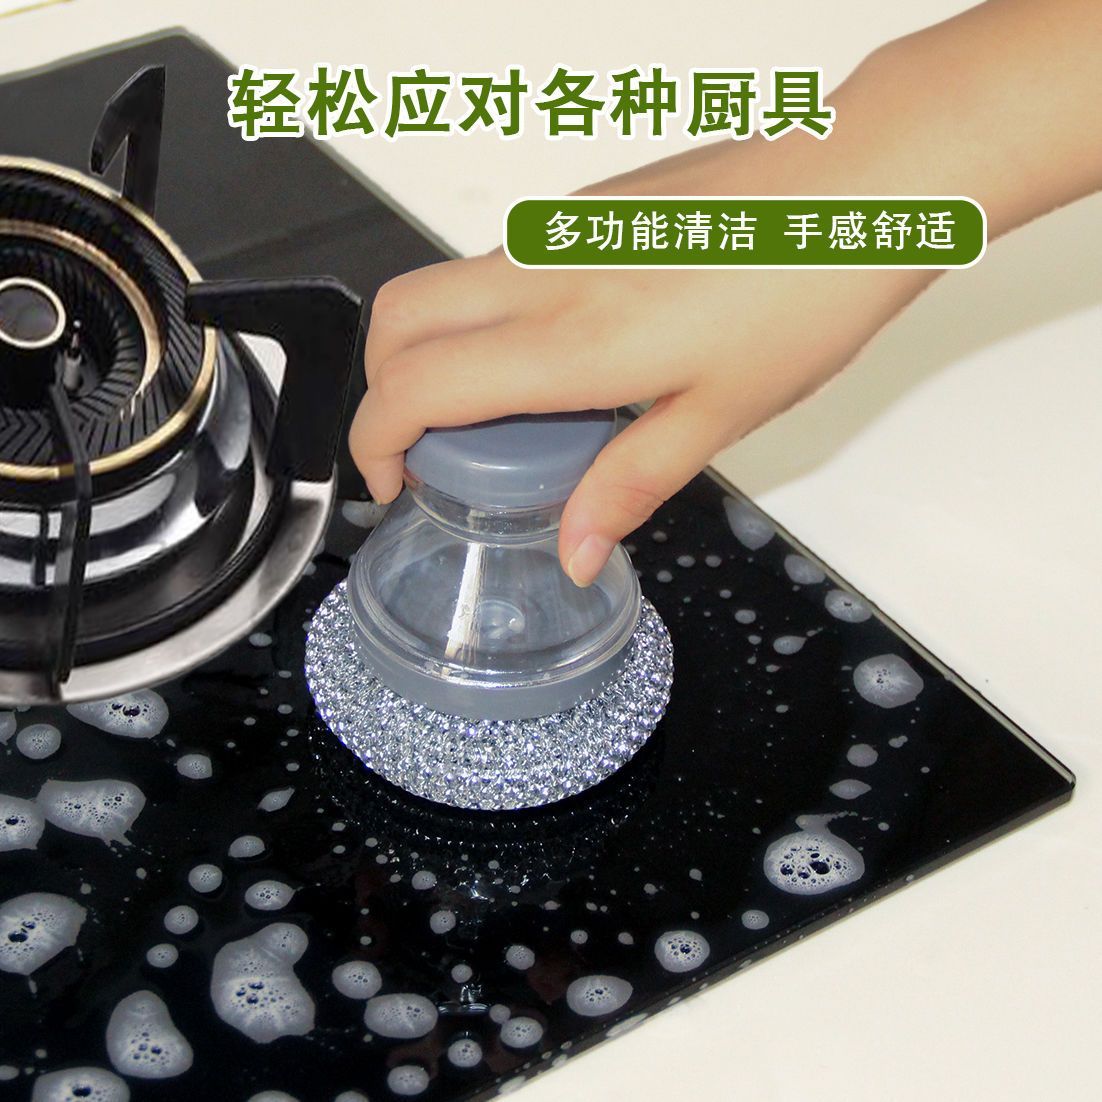 加液锅刷洗锅专用刷子清洁刷不伤锅不沾油刷锅神器厨房用清洁锅刷